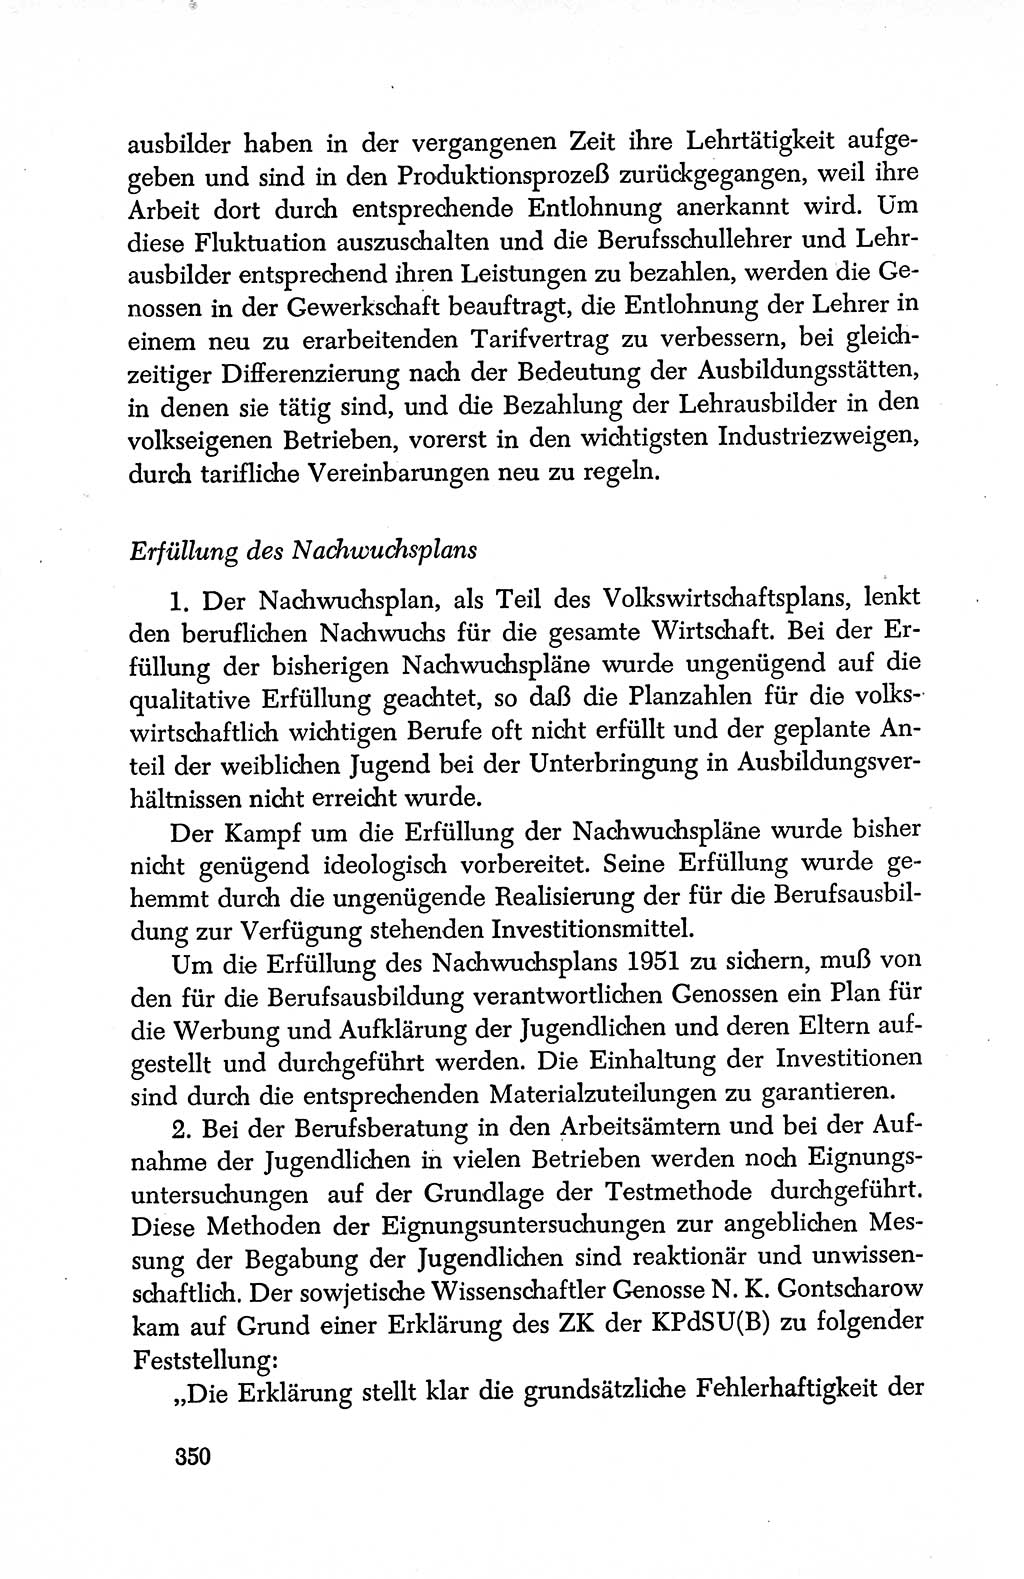 Dokumente der Sozialistischen Einheitspartei Deutschlands (SED) [Deutsche Demokratische Republik (DDR)] 1950-1952, Seite 350 (Dok. SED DDR 1950-1952, S. 350)